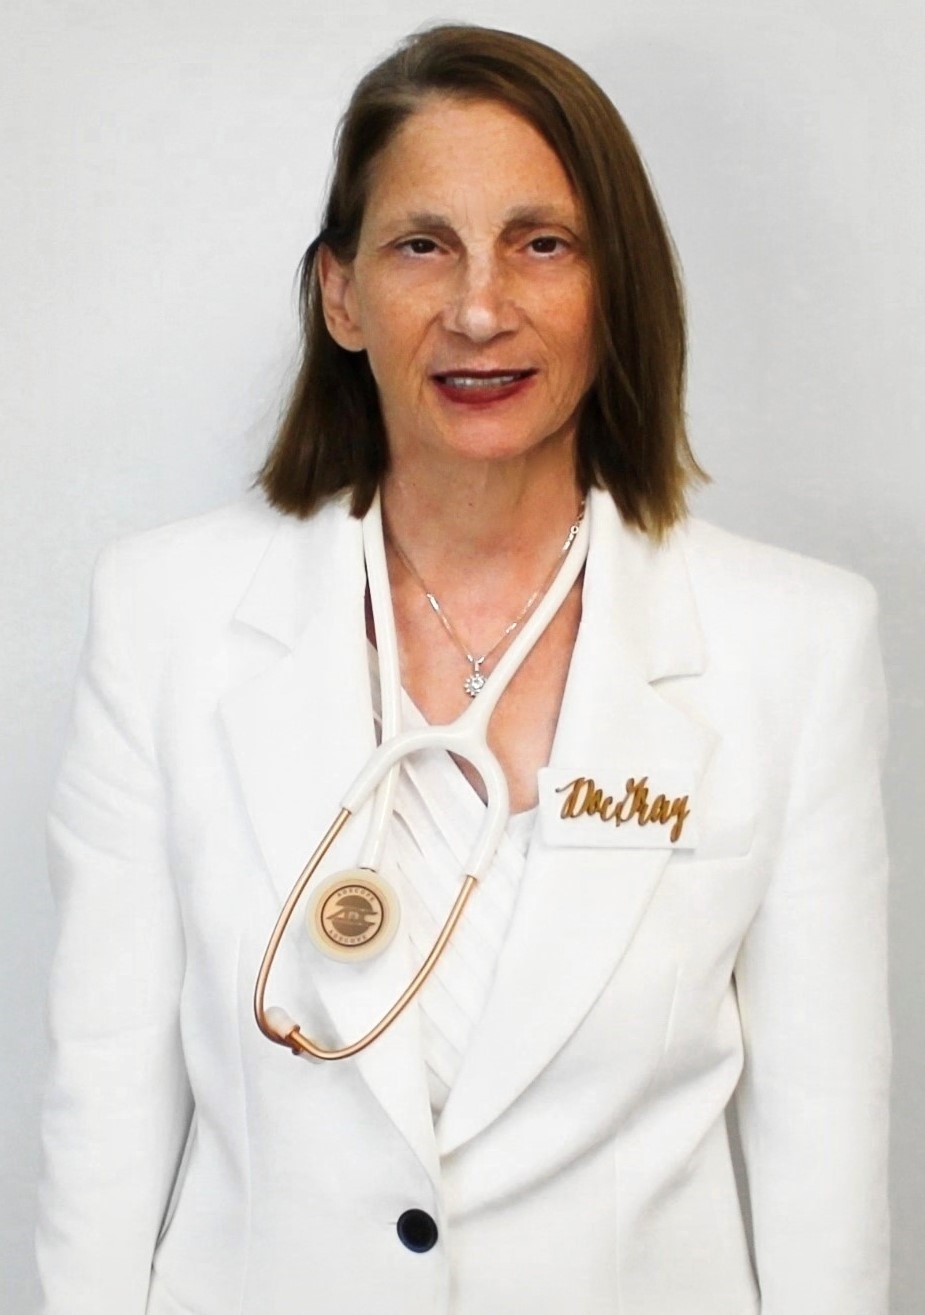 Dr. Jillian Gray